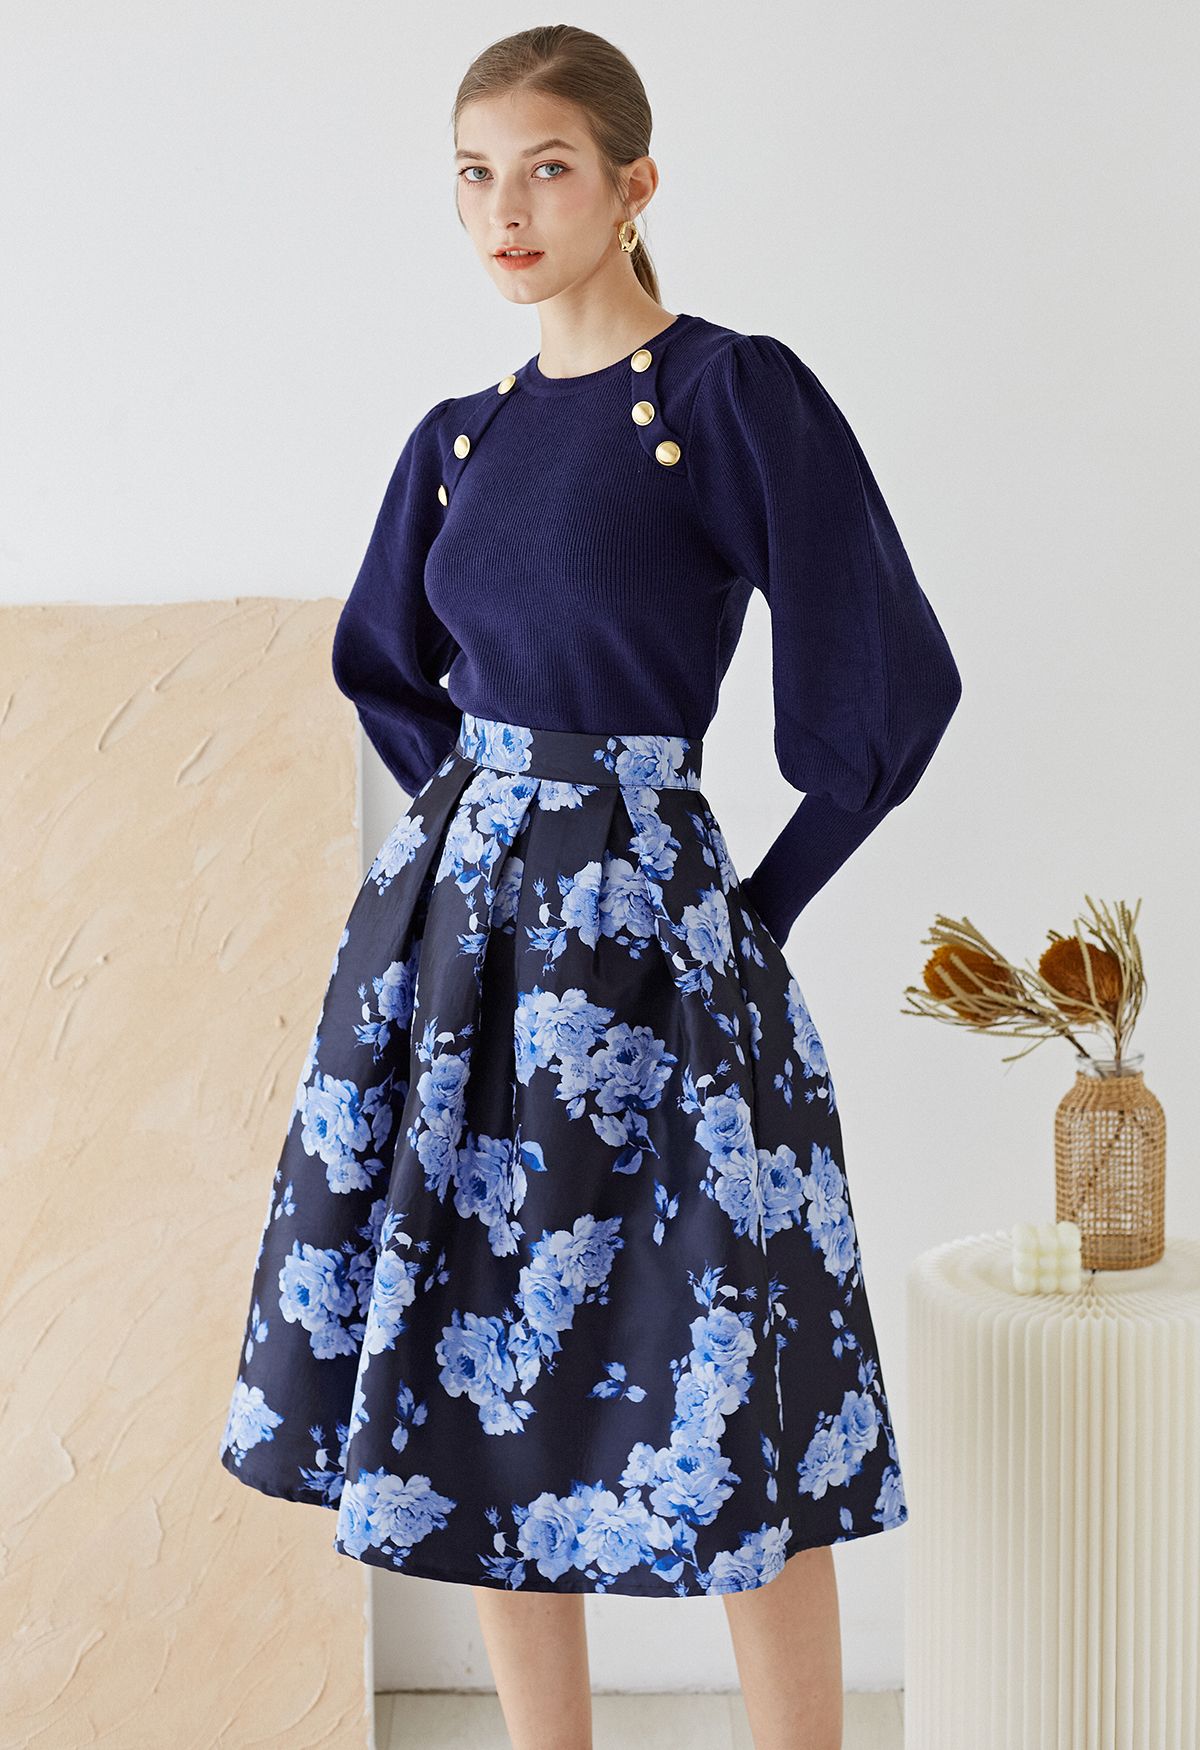 Falda midi plisada de jacquard de peonía azul flor de medianoche